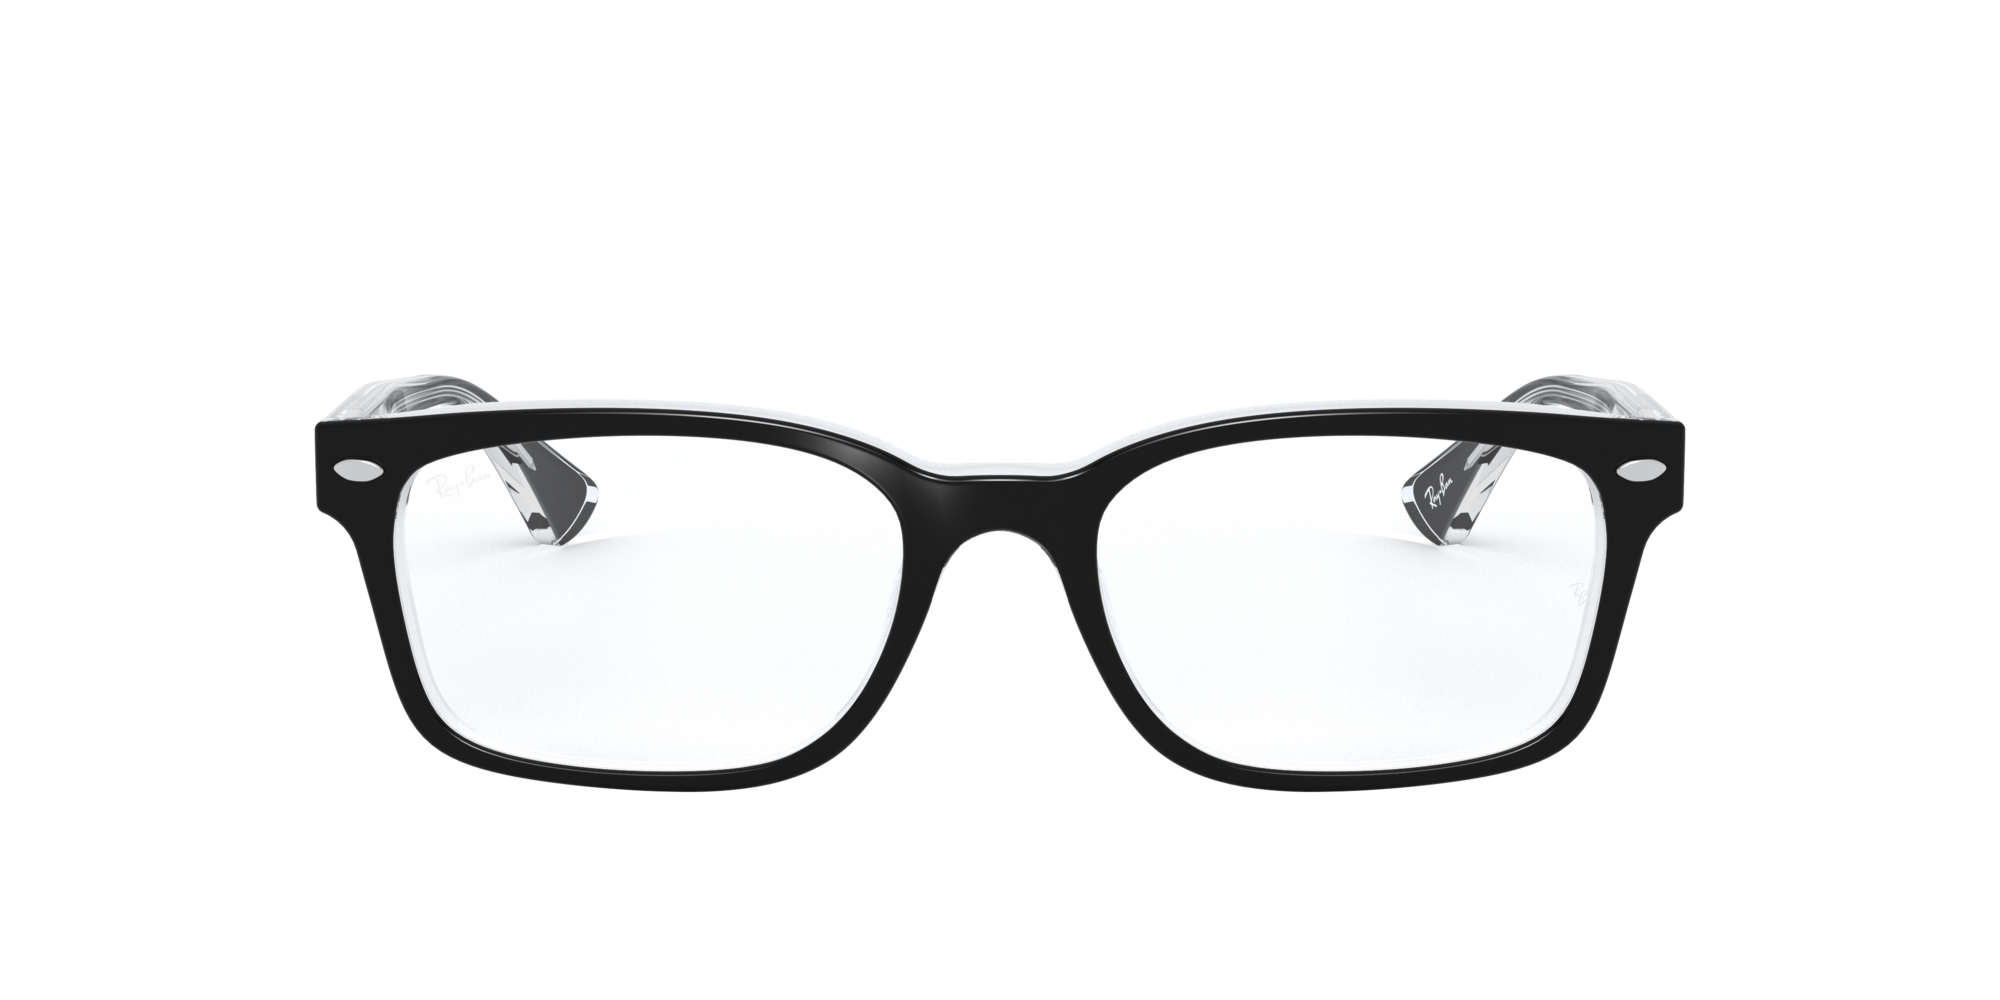 RX5286: Shop Ray-Ban Black Square Eyeglasses at LensCrafters